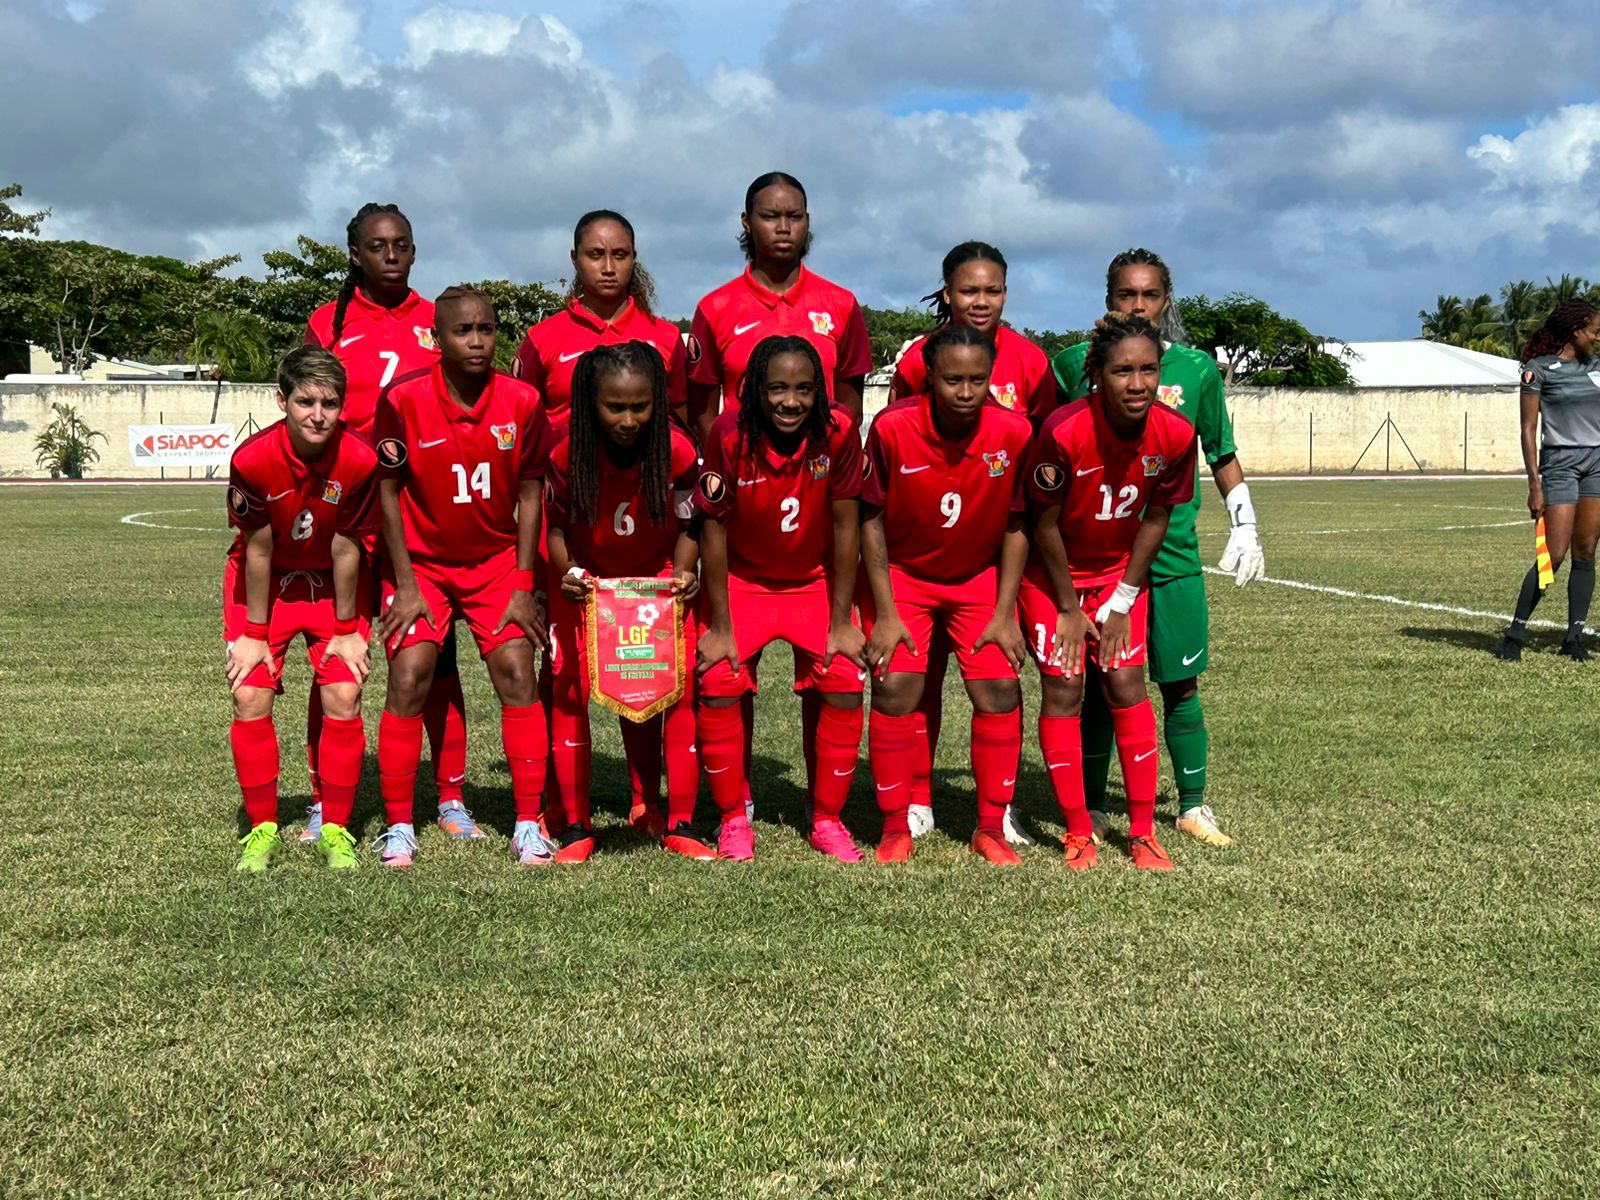     Road to Gold Cup : la sélection Guadeloupe féminine de football battue par Sainte-Lucie

